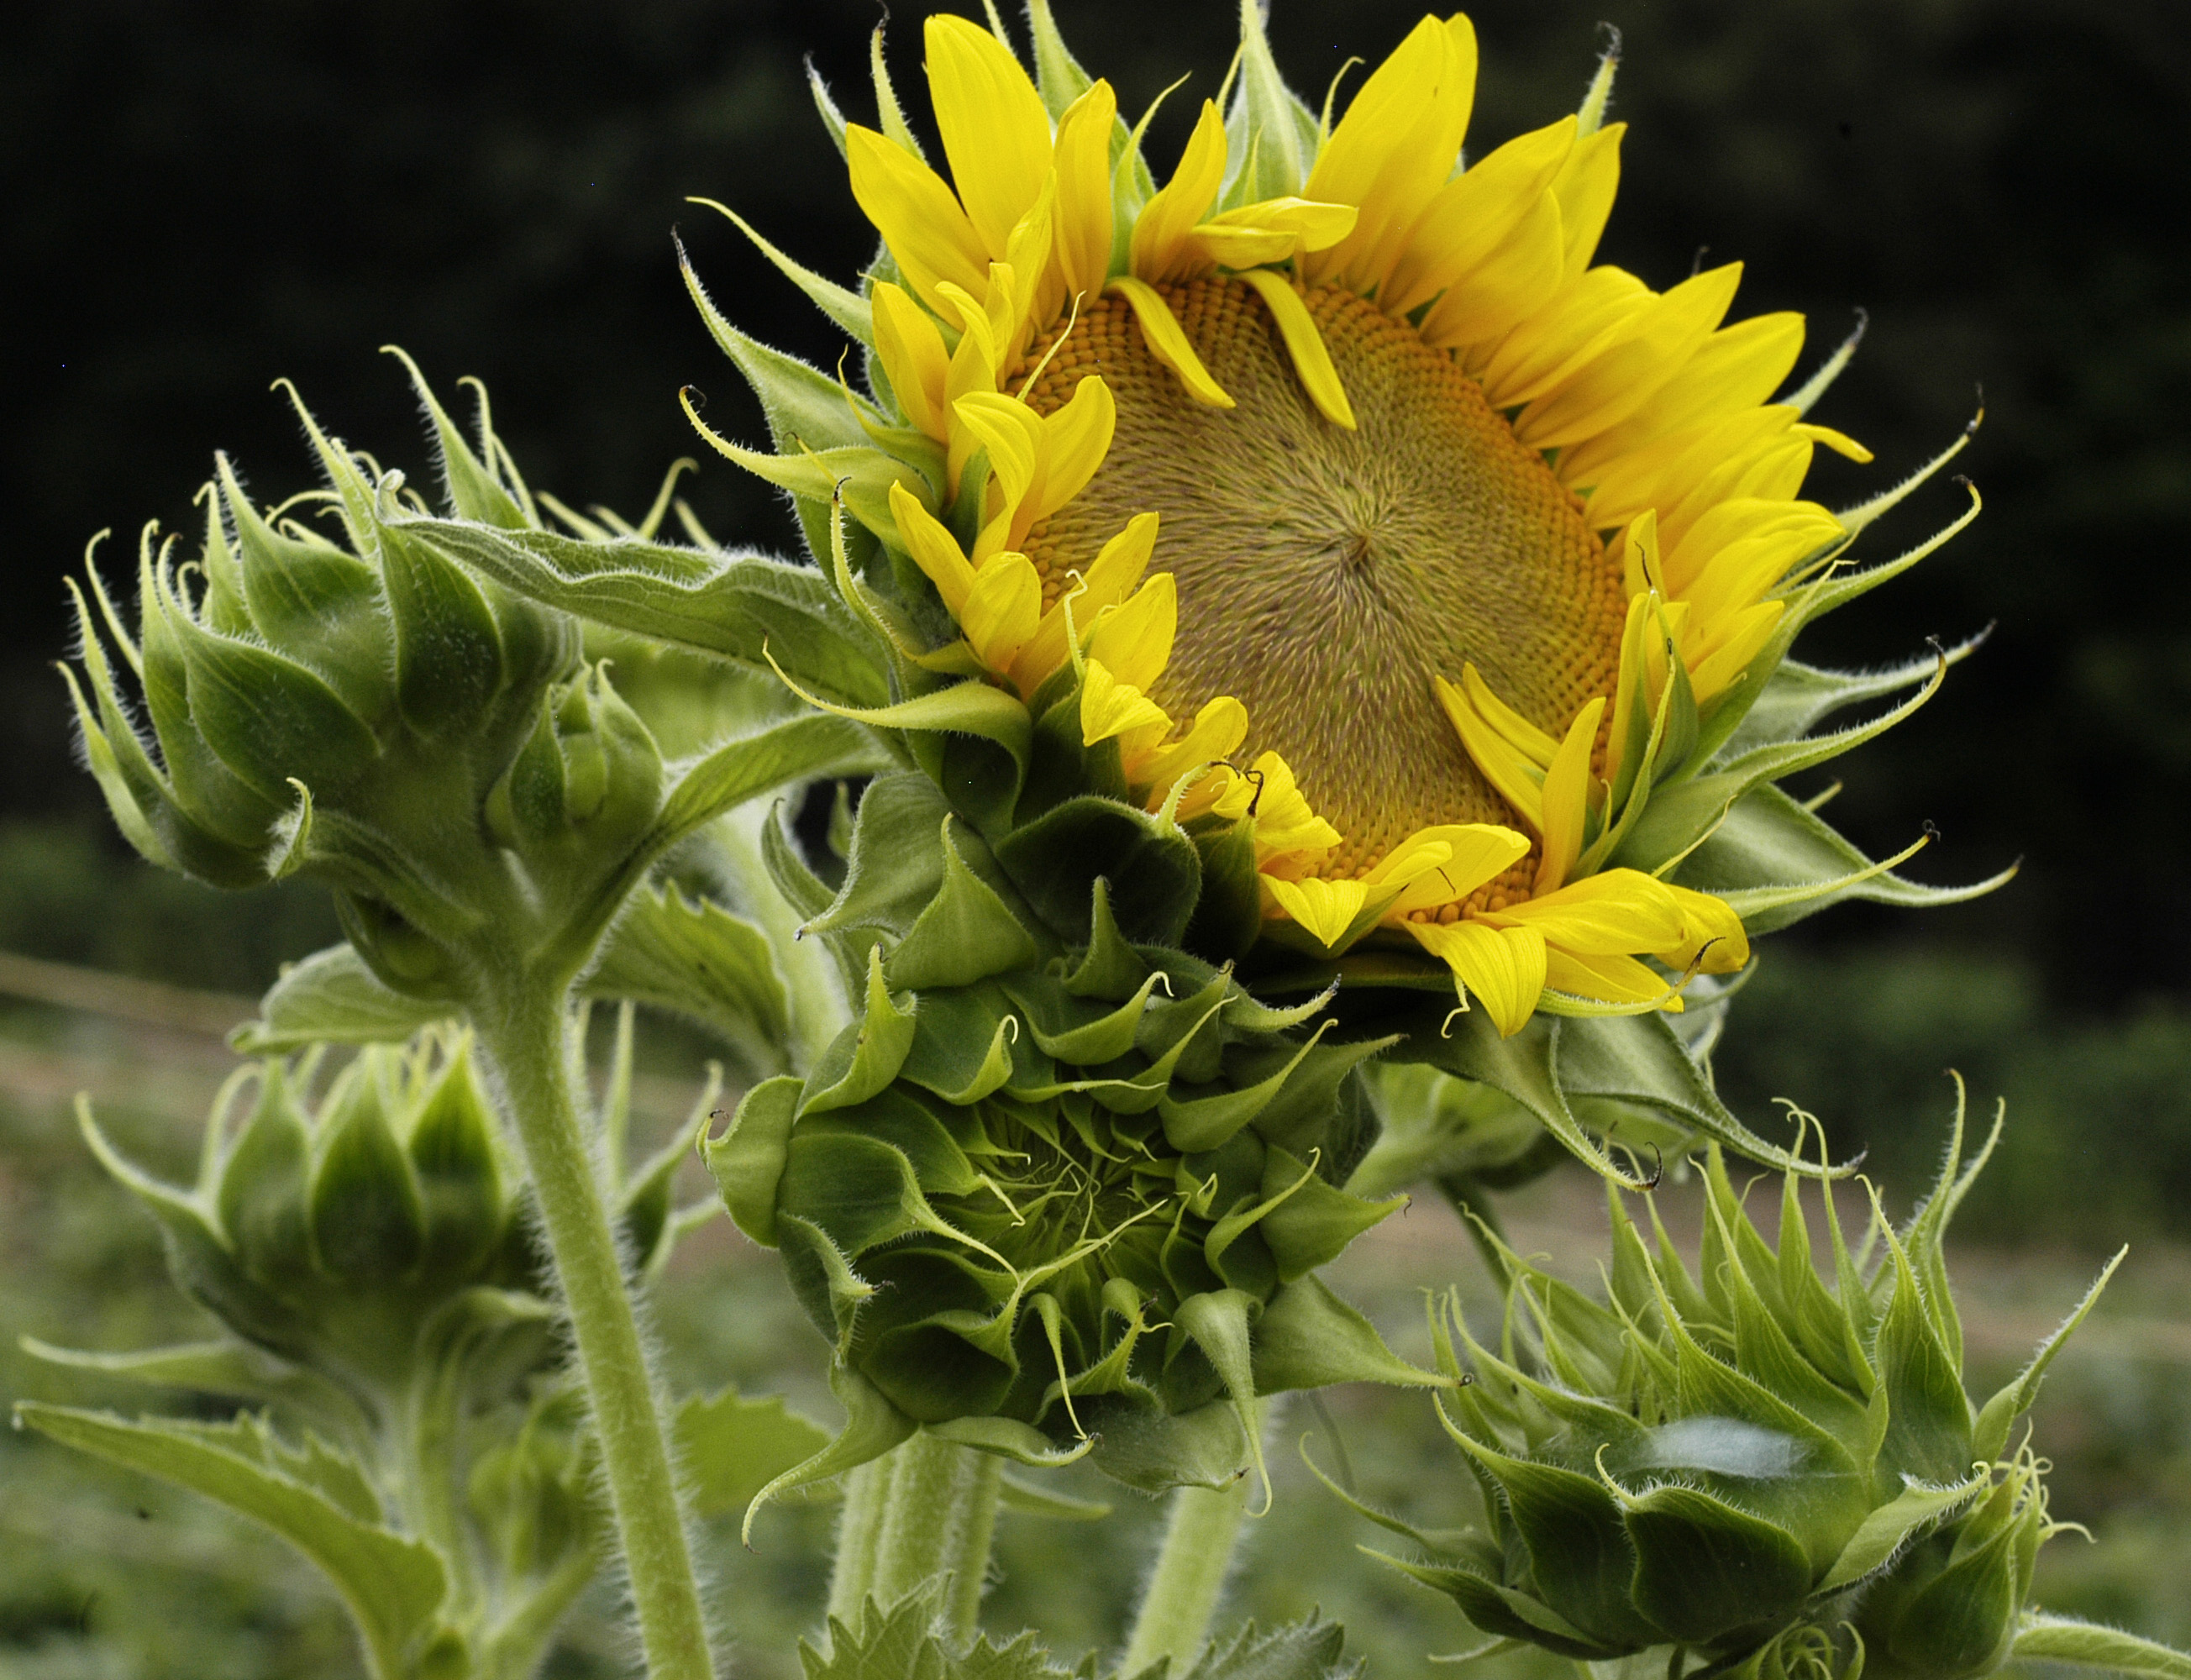 Peredovik (oil seed) Sunflower